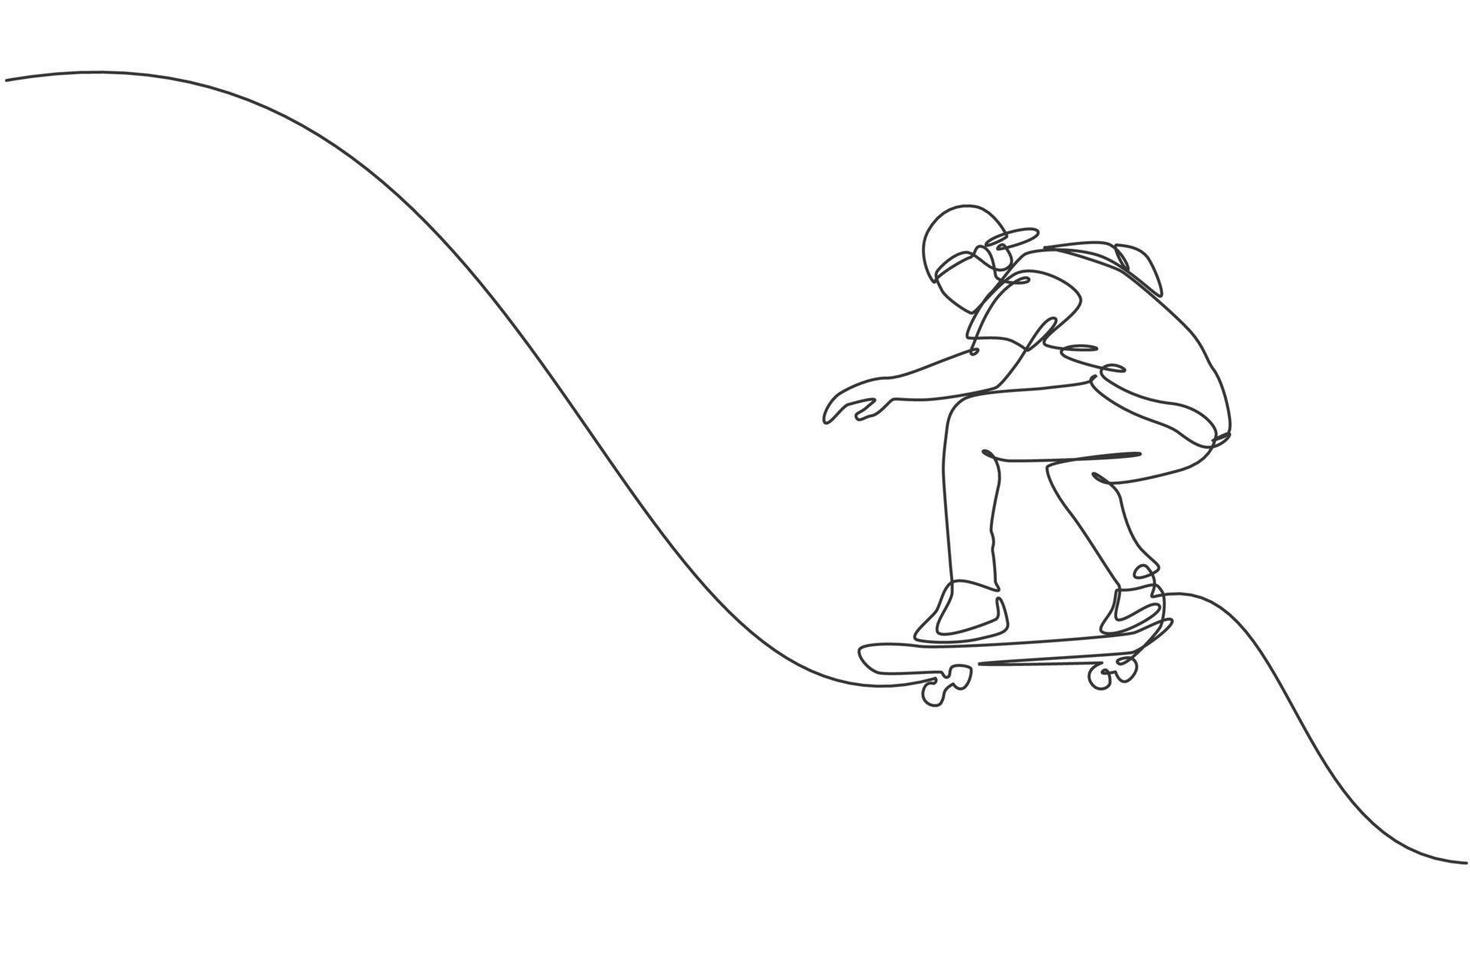 een doorlopende lijntekening van een jonge coole skateboarder die op een skateboard rijdt en een sprongtruc doet in het skatepark. extreme tiener sport concept. dynamische enkele lijn tekenen ontwerp vectorillustratie vector